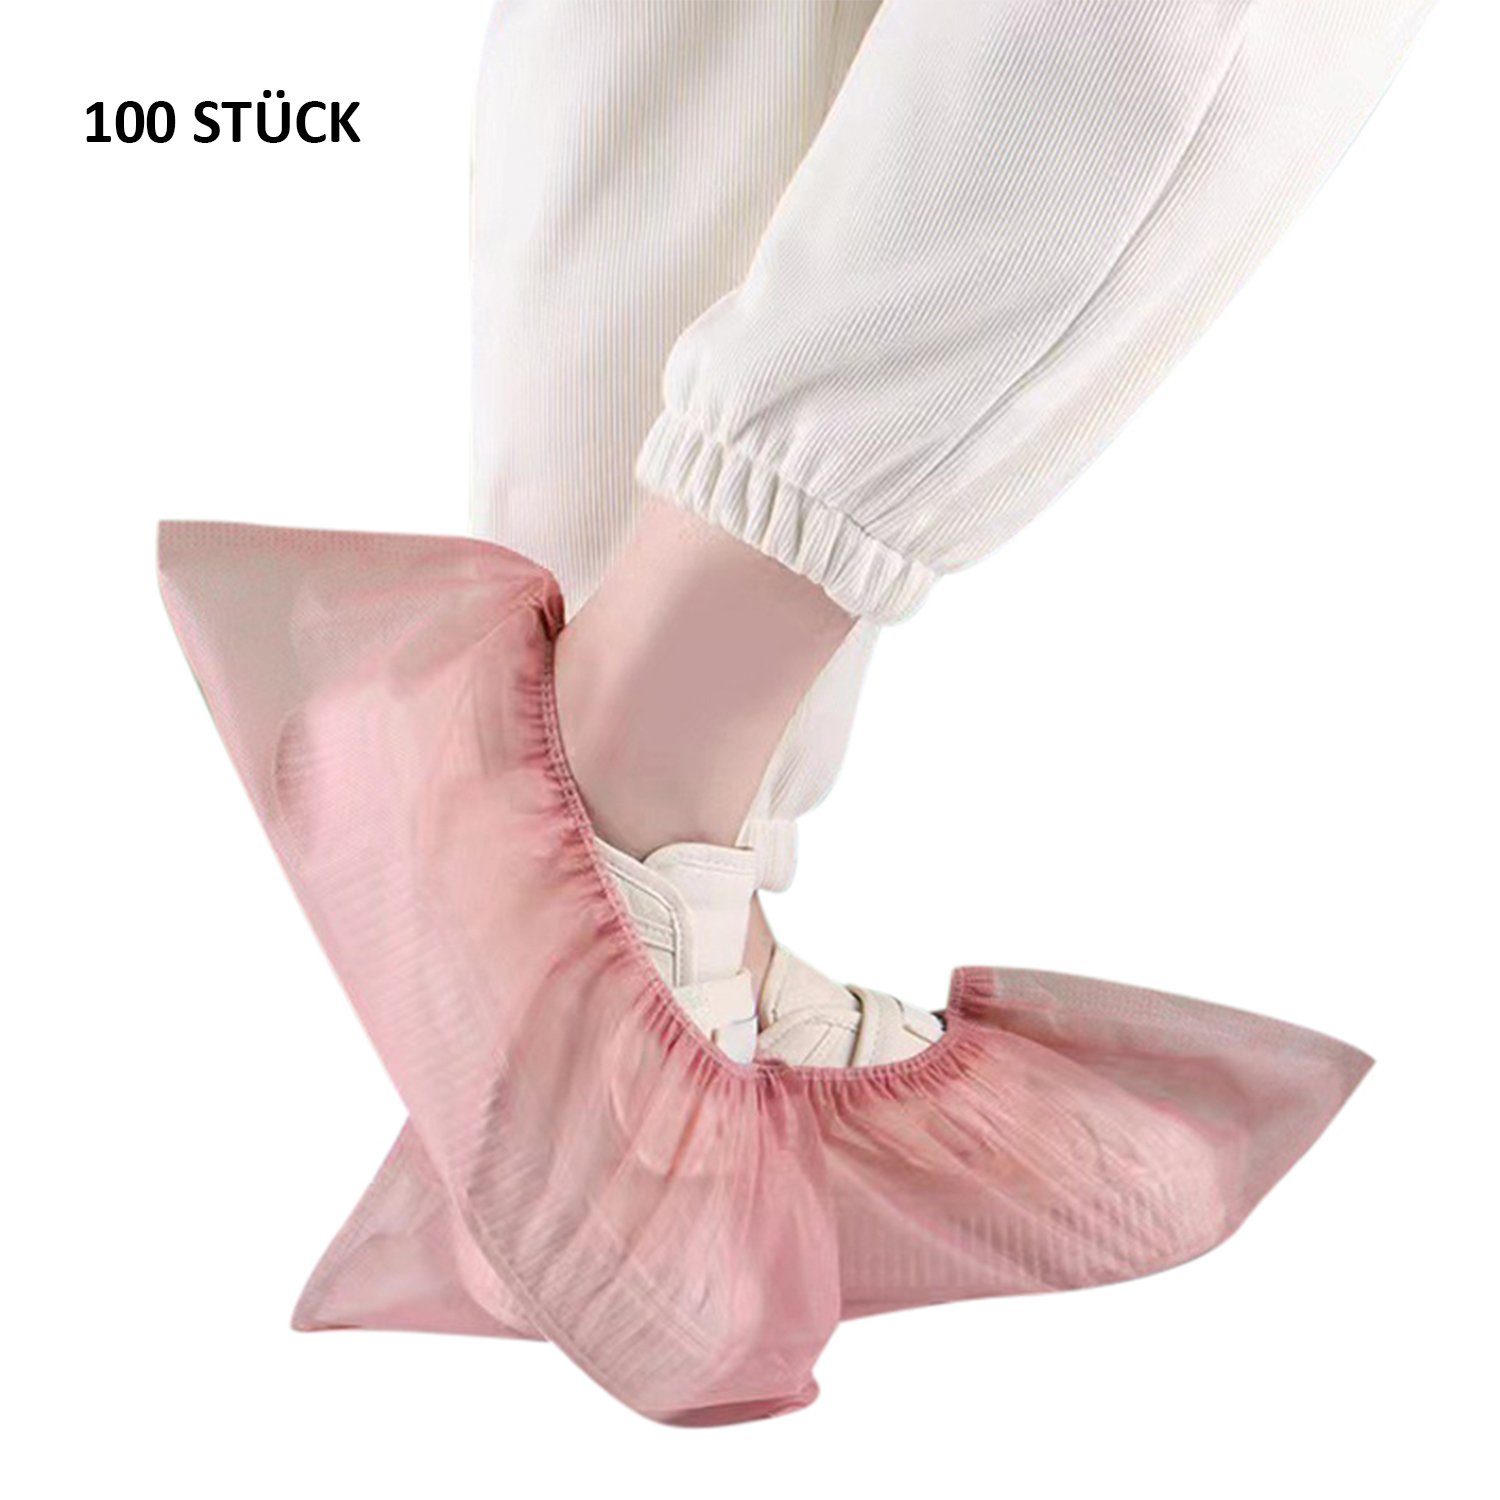 Daisred Schuhüberzieher 100 Stück Schuhüberzieher hygienische Einweg-Stiefel rutschfest Rosa